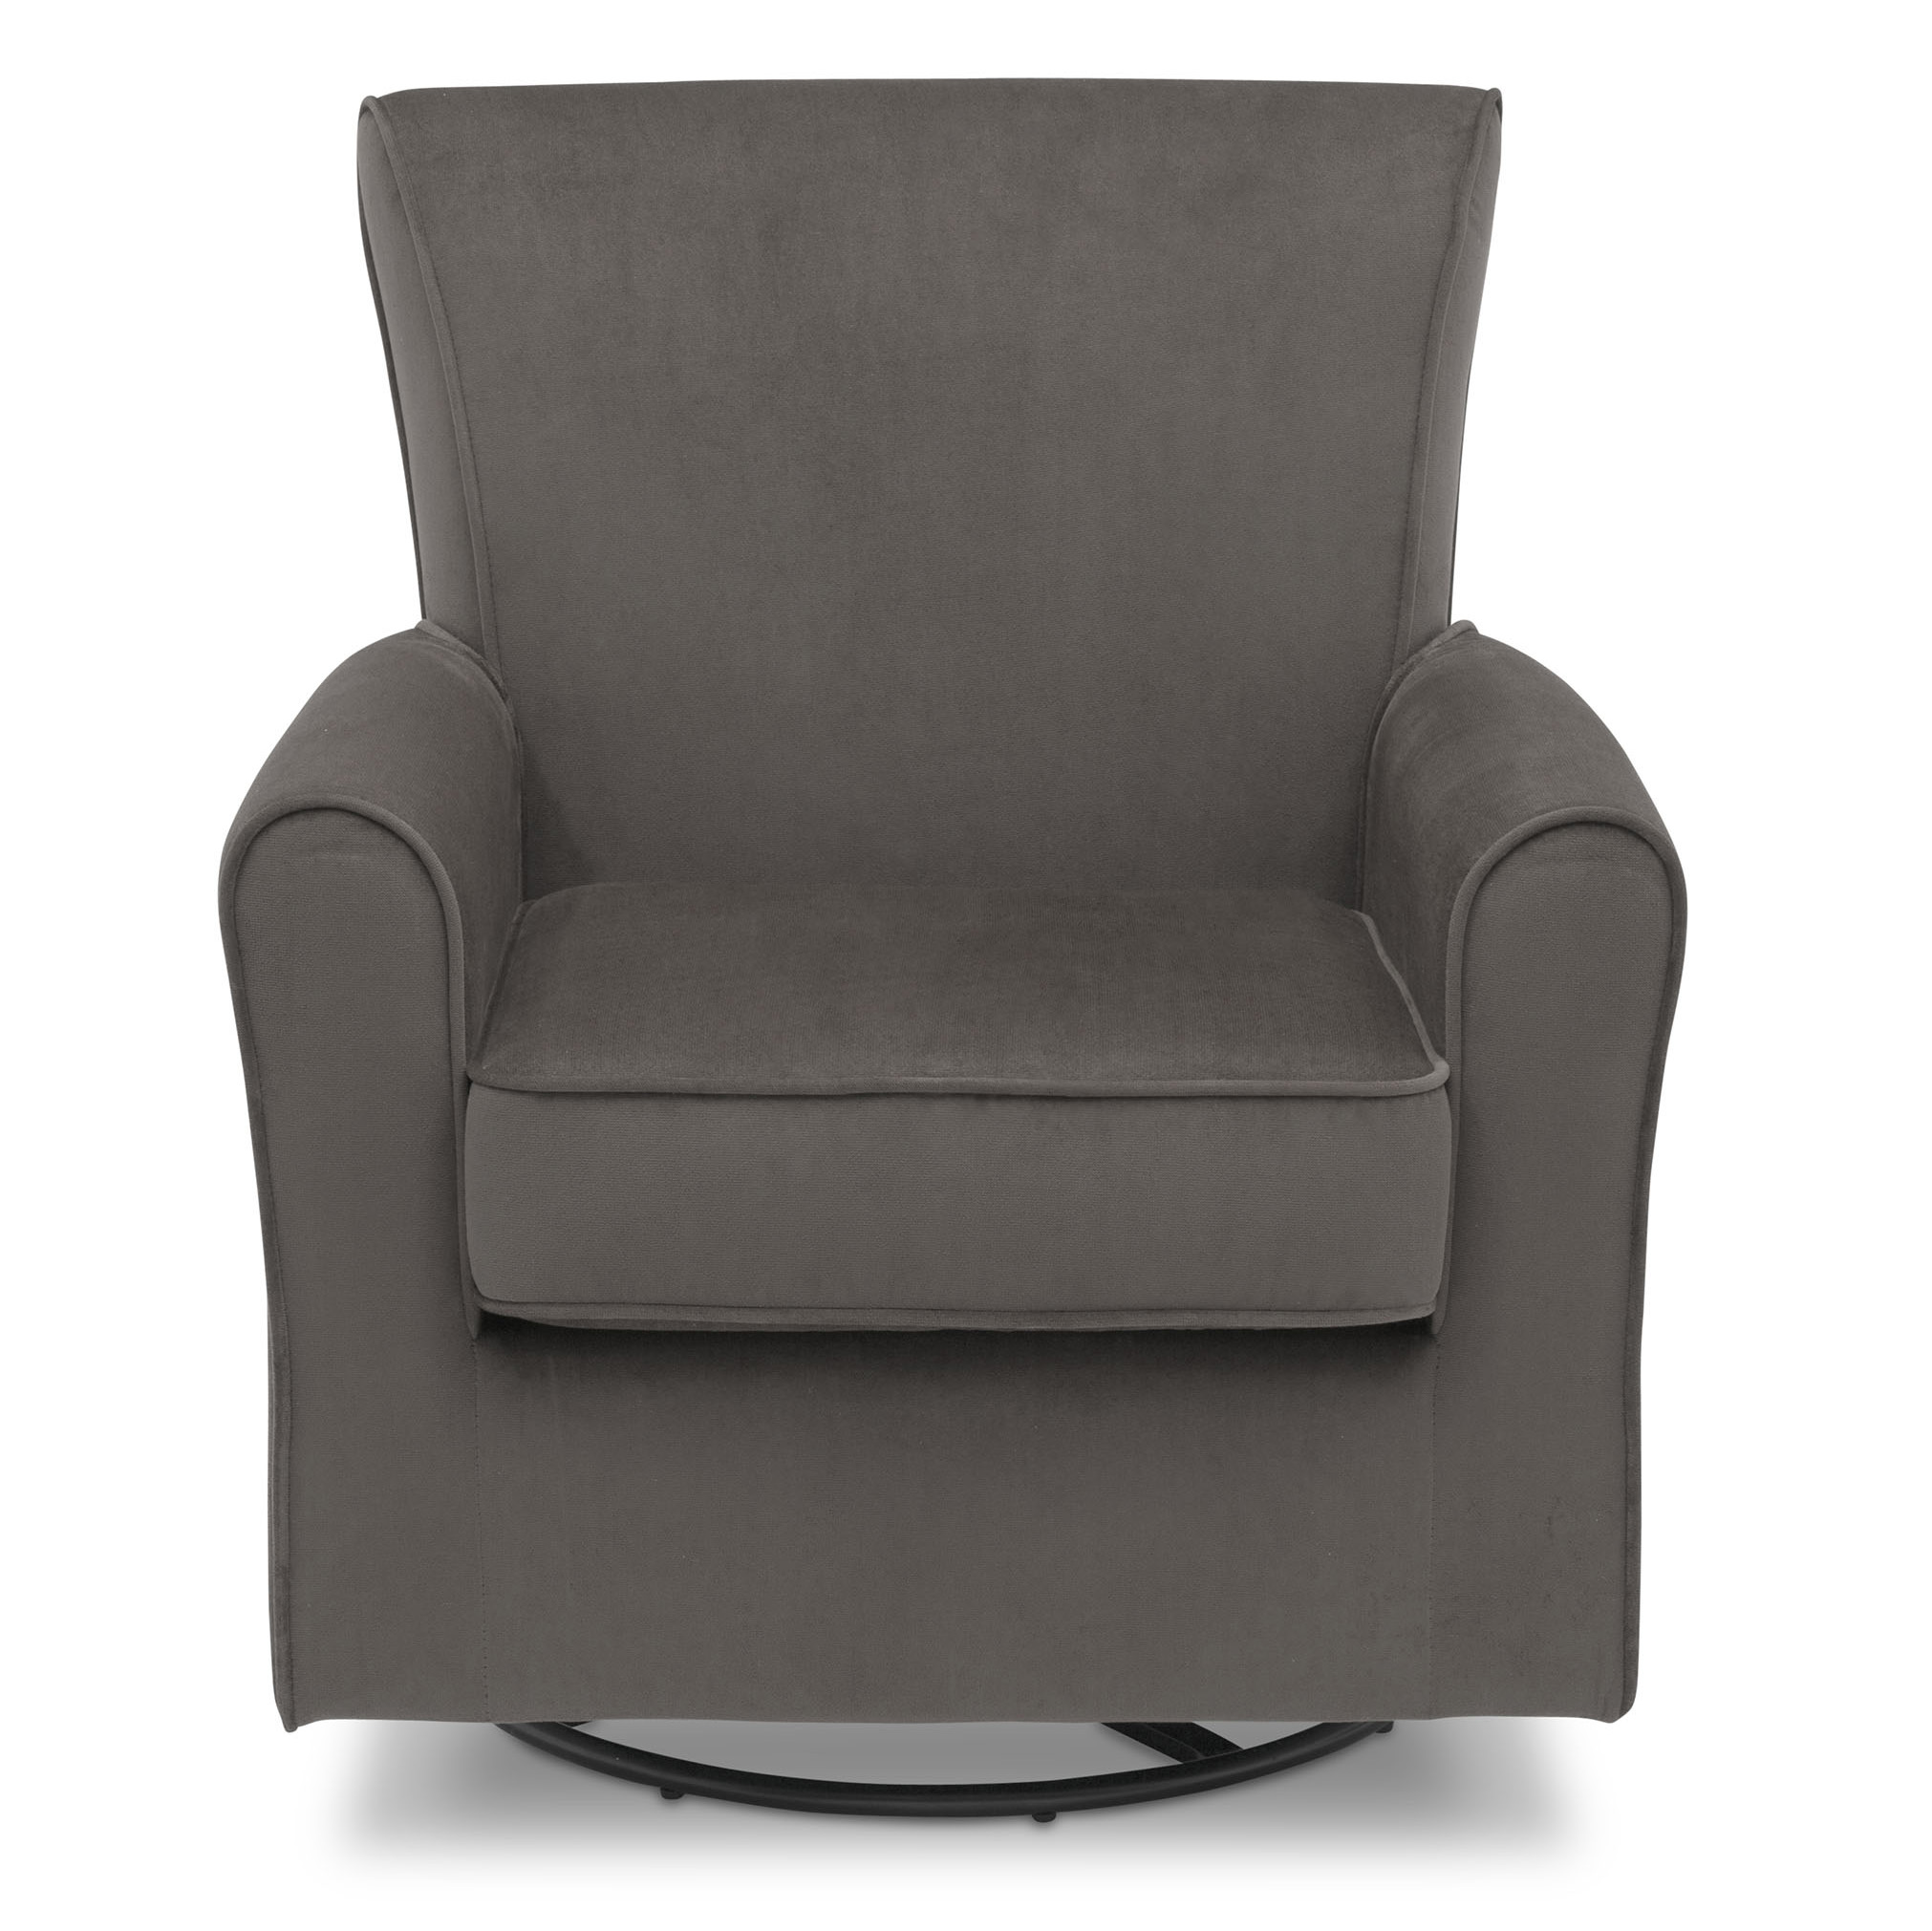 Delta Children Elena Glider Swivel Rocker Chair, Grey Velvet - image 3 of 5